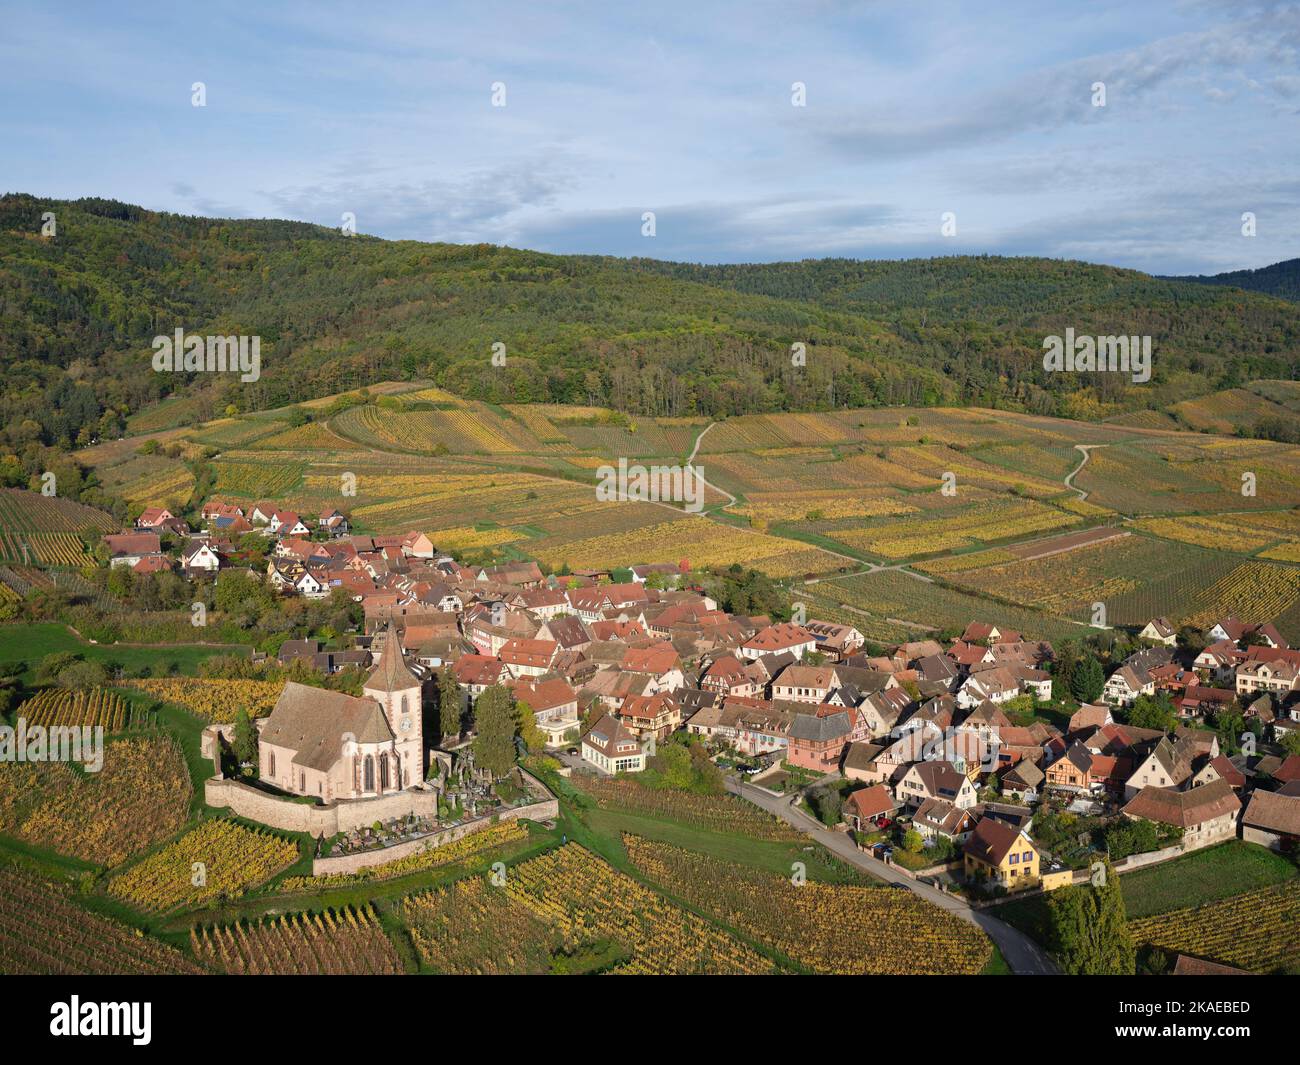 VUE AÉRIENNE. Village pittoresque au pied des Vosges avec ses vignobles aux couleurs automnales. Hunawihr, Alsace, Grand est, France. Banque D'Images